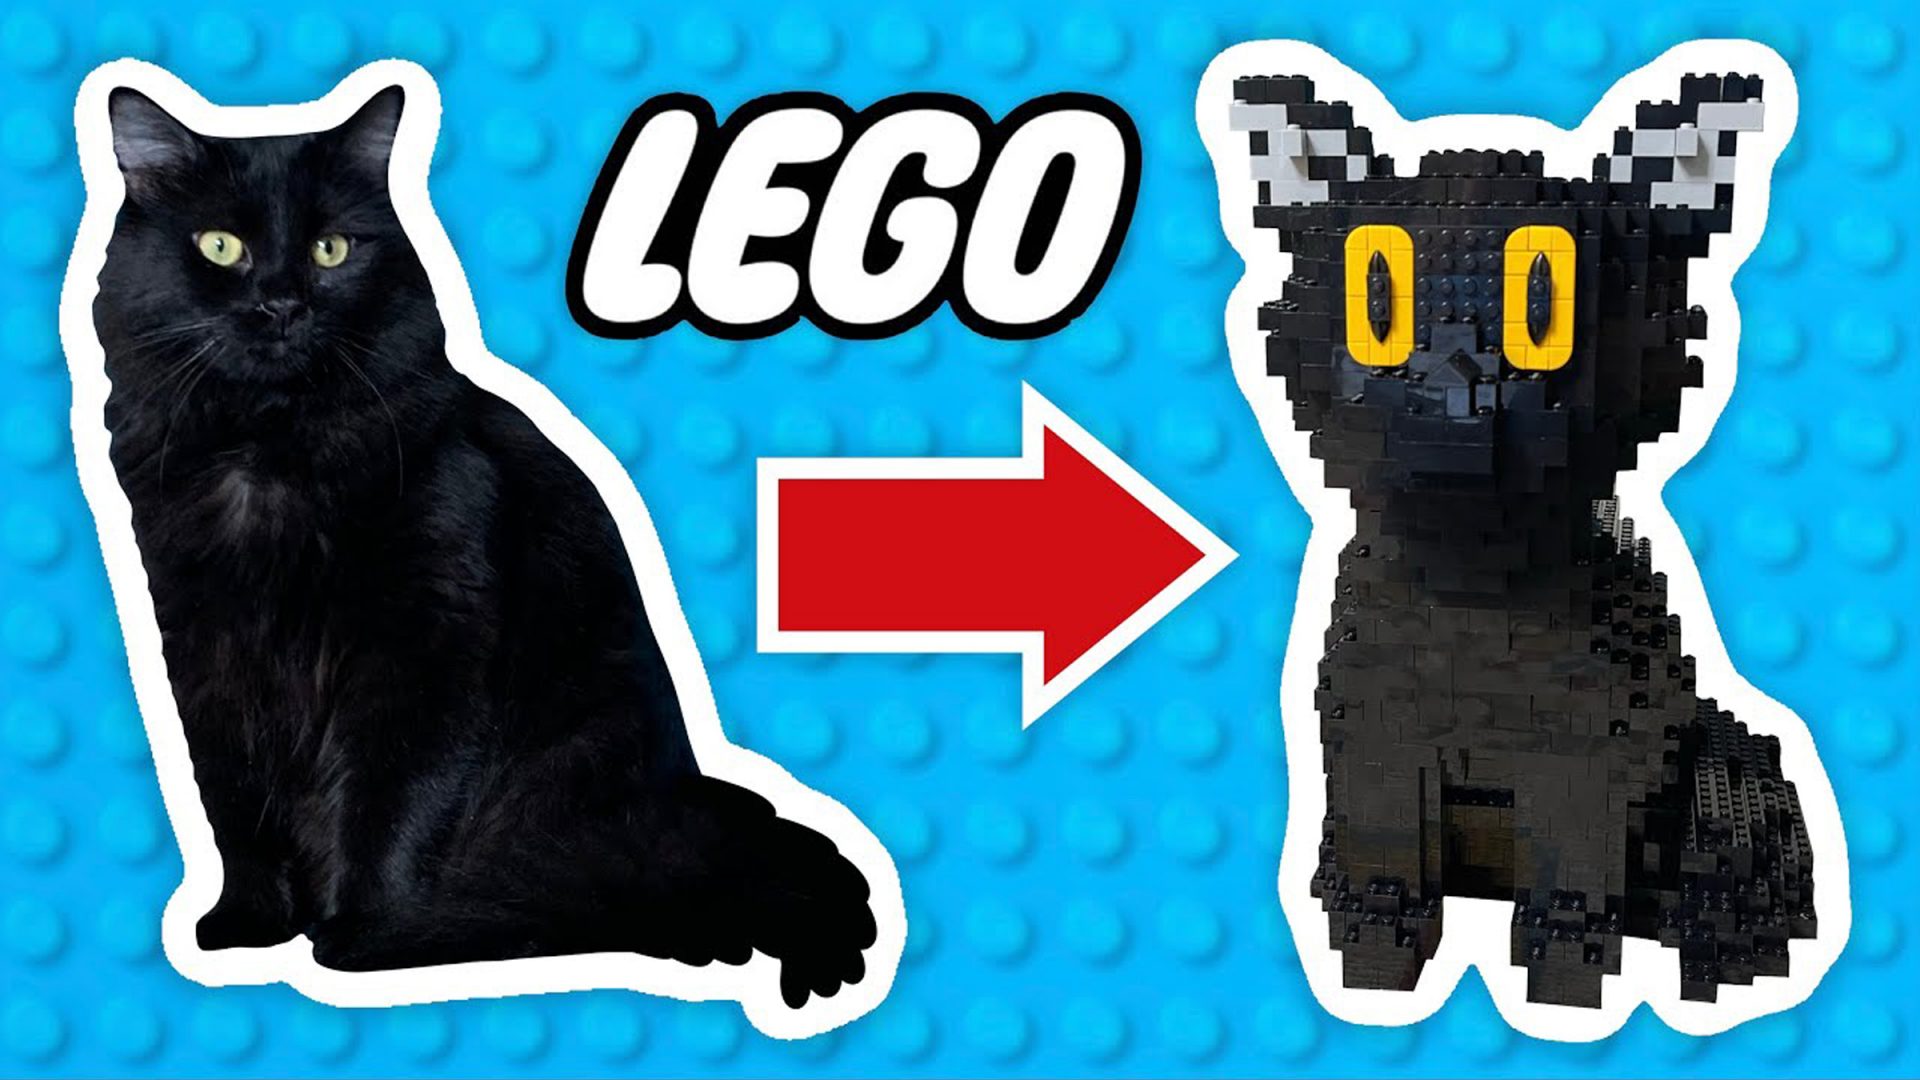 Il crée une réplique grandeur nature de son chat avec des LEGO